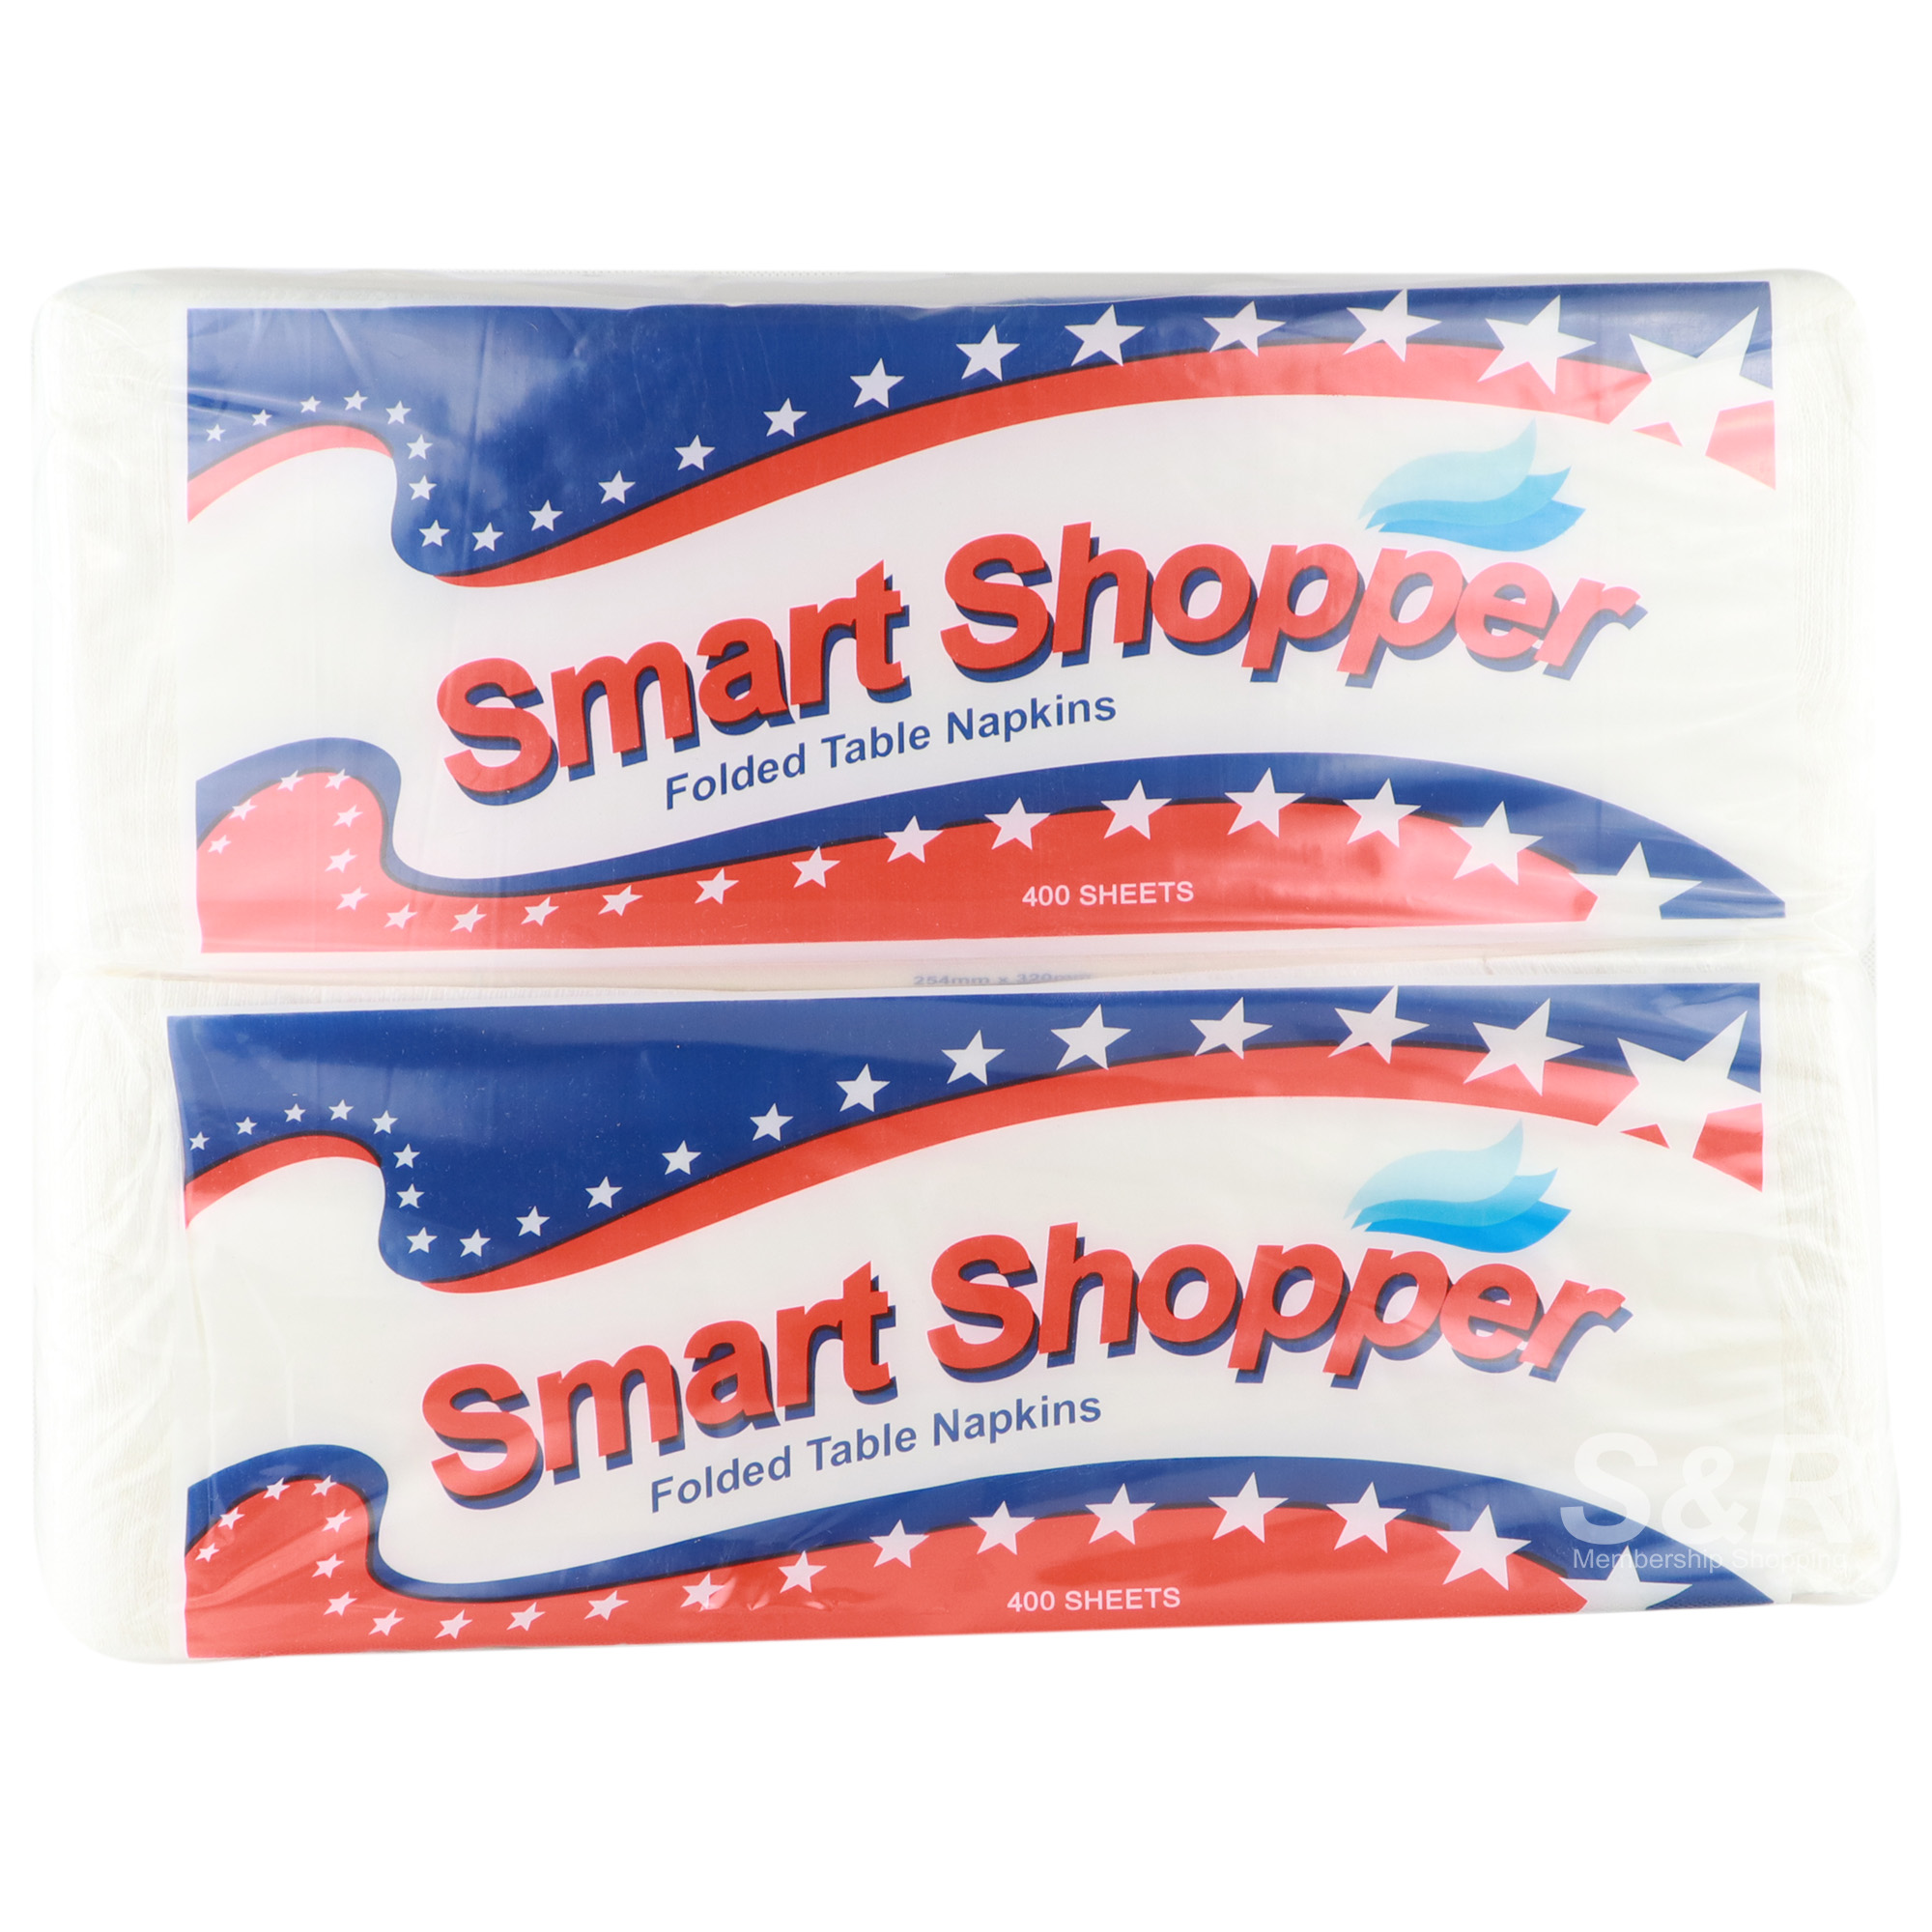 Smart Shopper Folded Table Napkins 2 packs